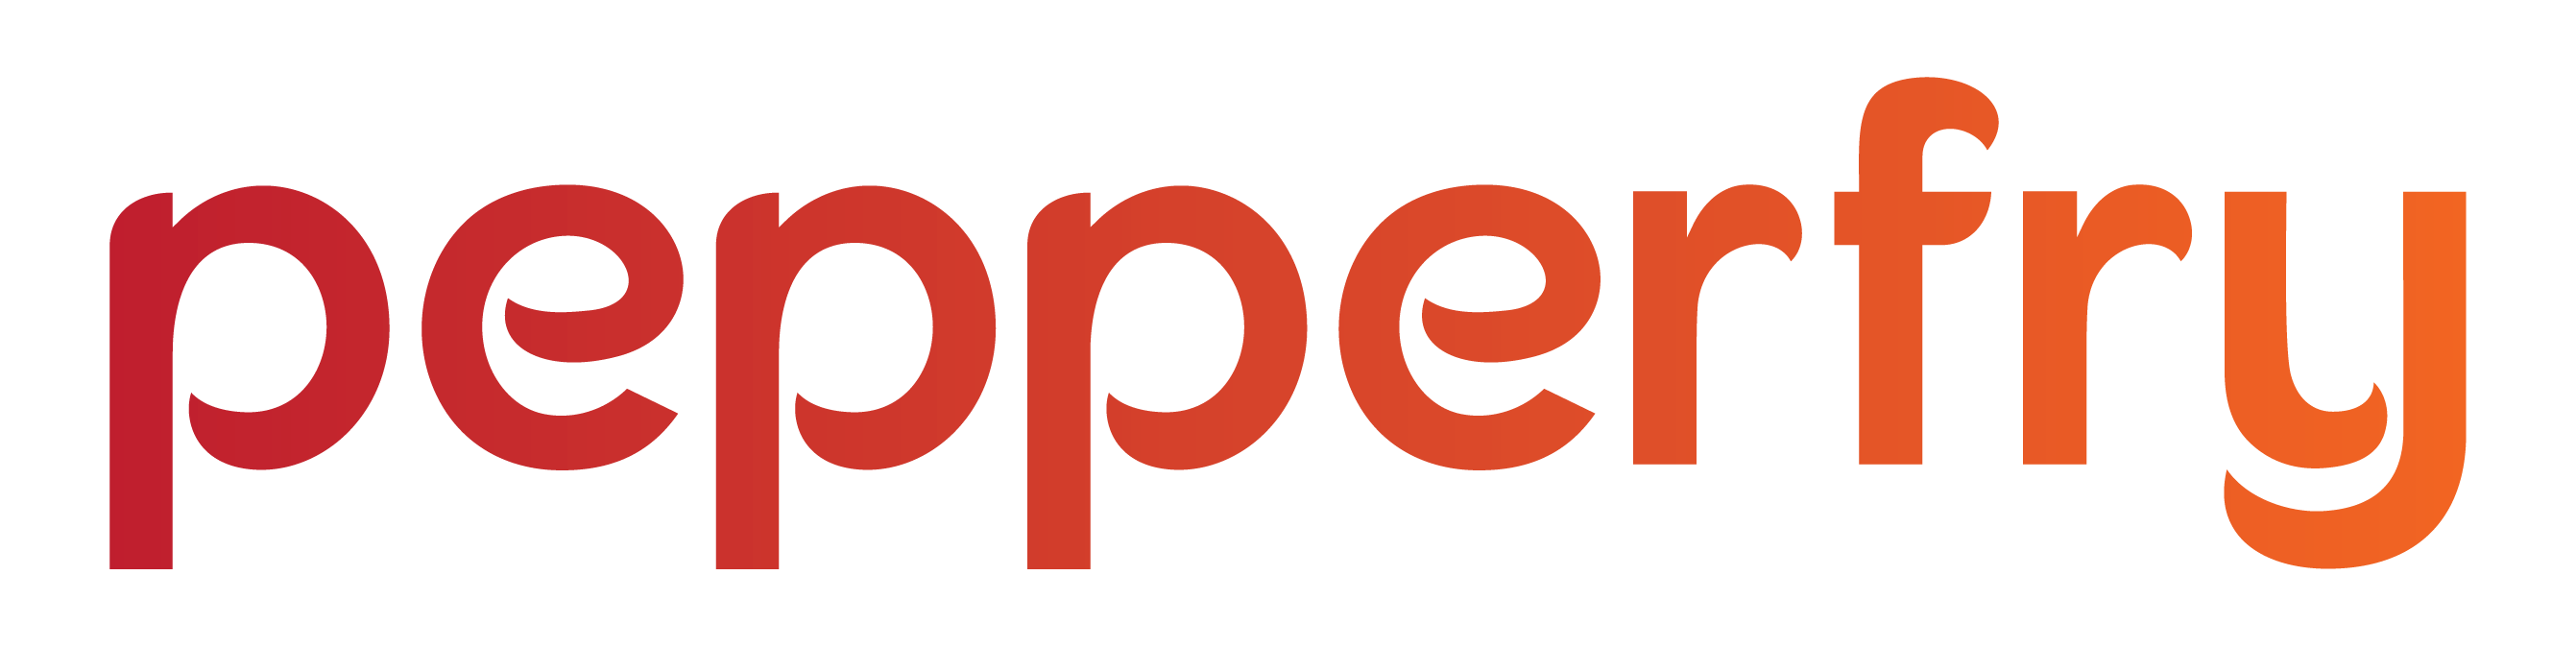 Pepperfry Logo